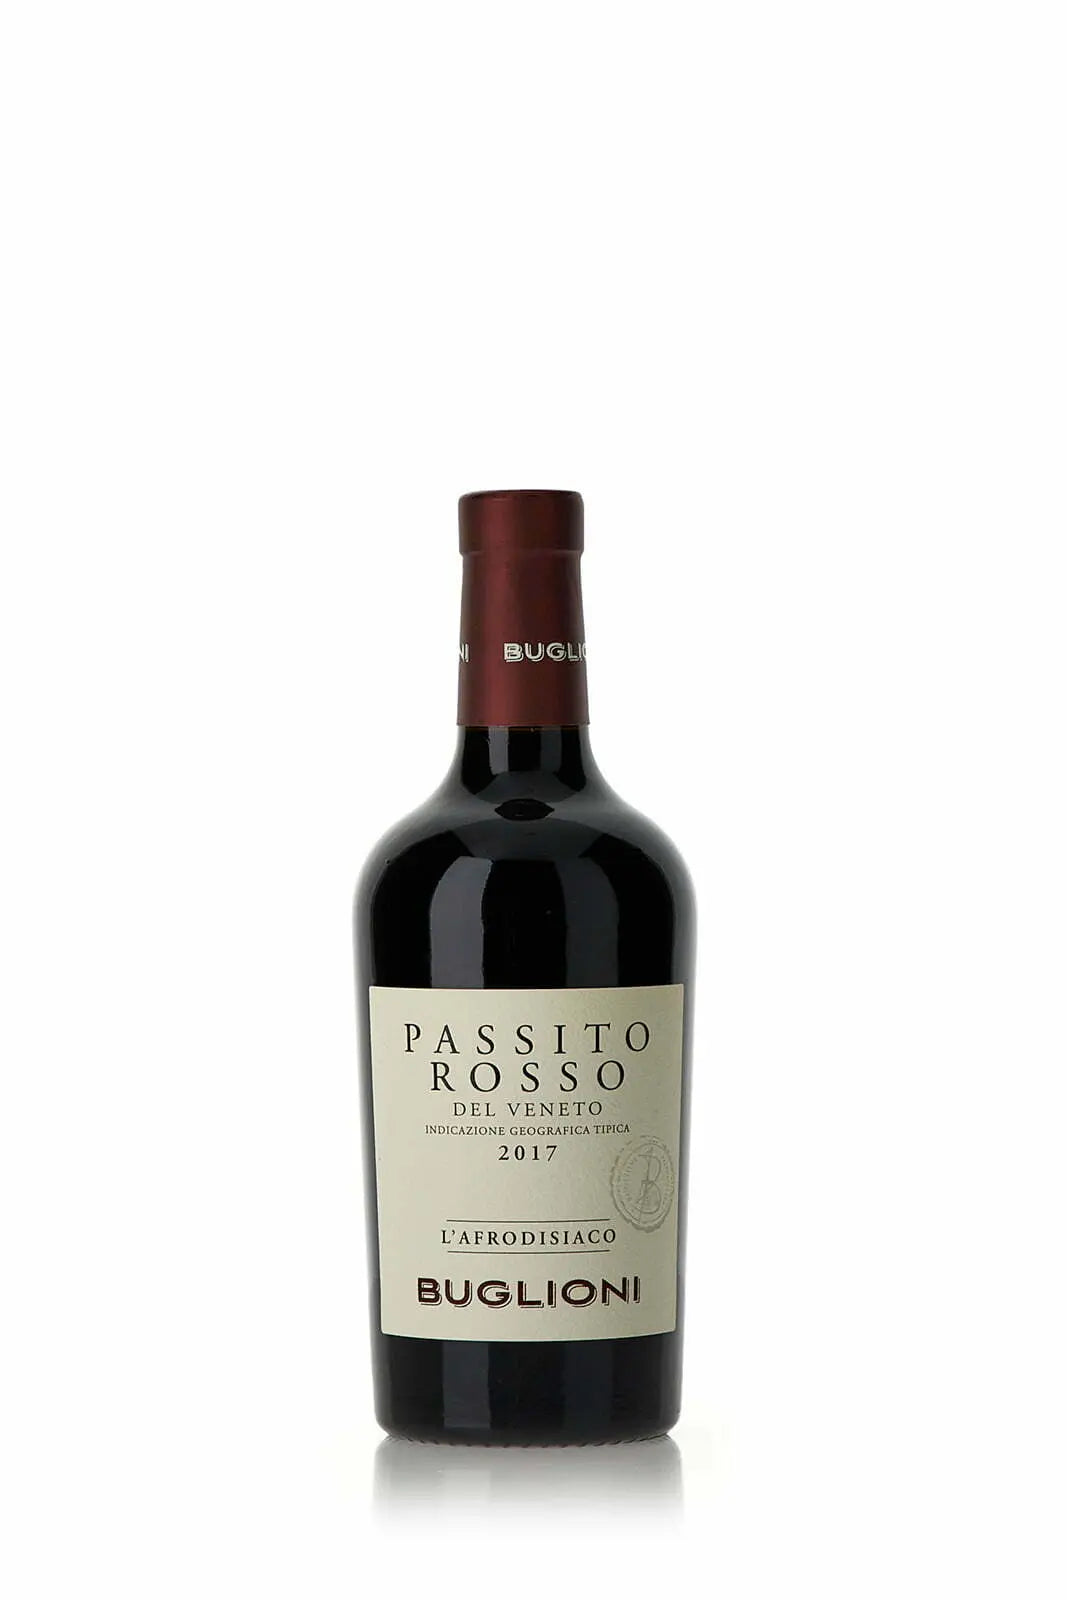 Buglioni Passito Rosso Veneto L AFRODISIACO 2017 (1x50cl) - TwoMoreGlasses.com